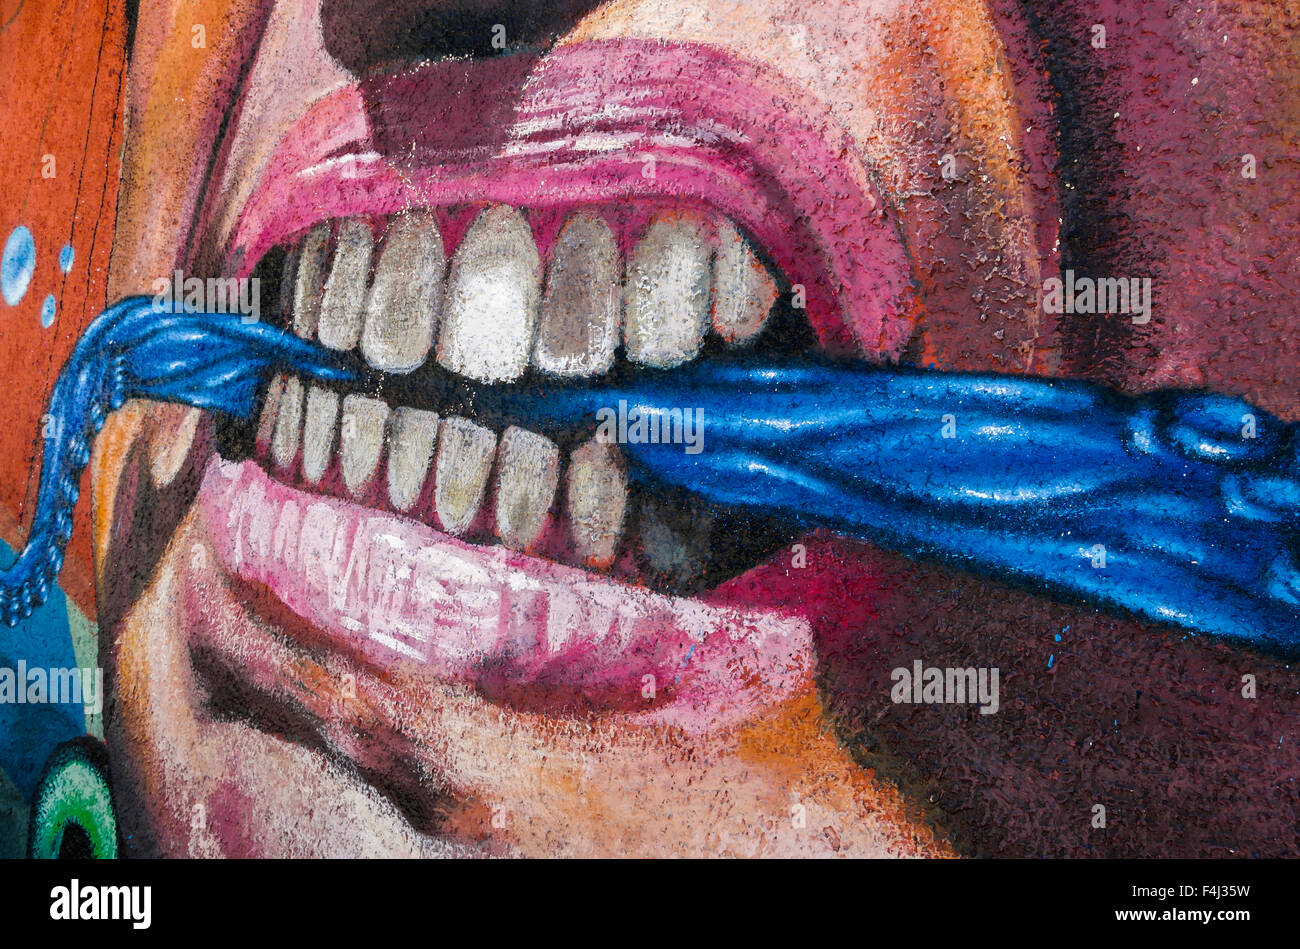 Valparaíso, Chile - Octubre 29, 2014: el colorido graffiti detalle de una agresiva cara con pañuelo entre los dientes en Valparaíso Foto de stock